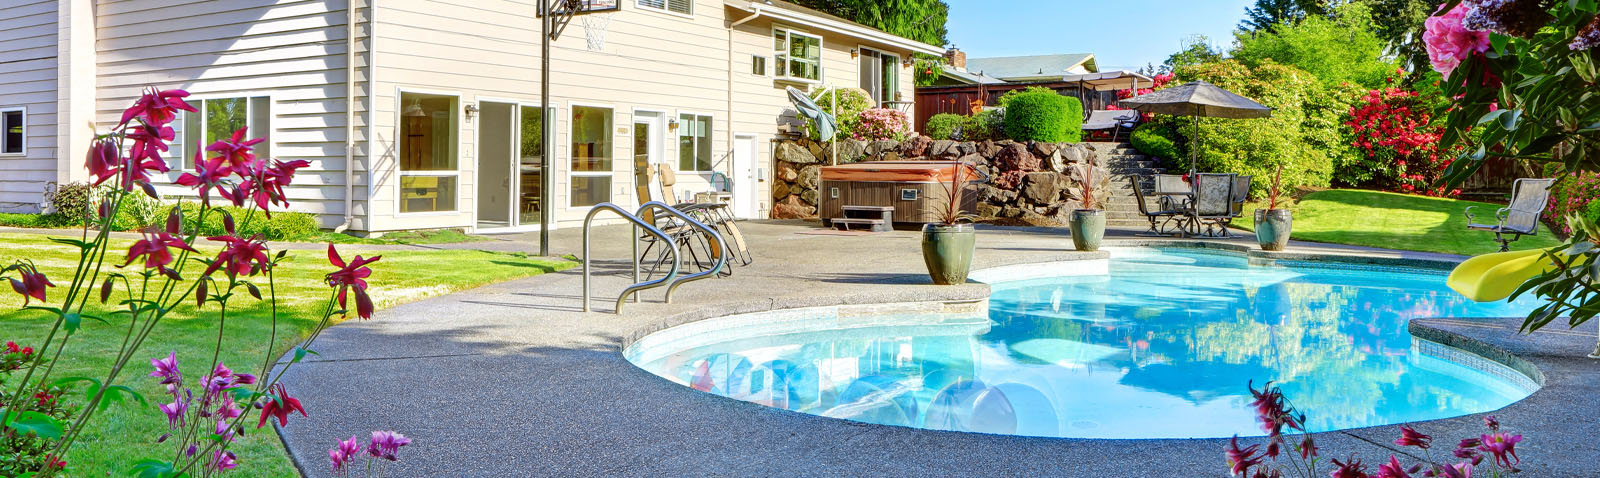 Backyard and pool